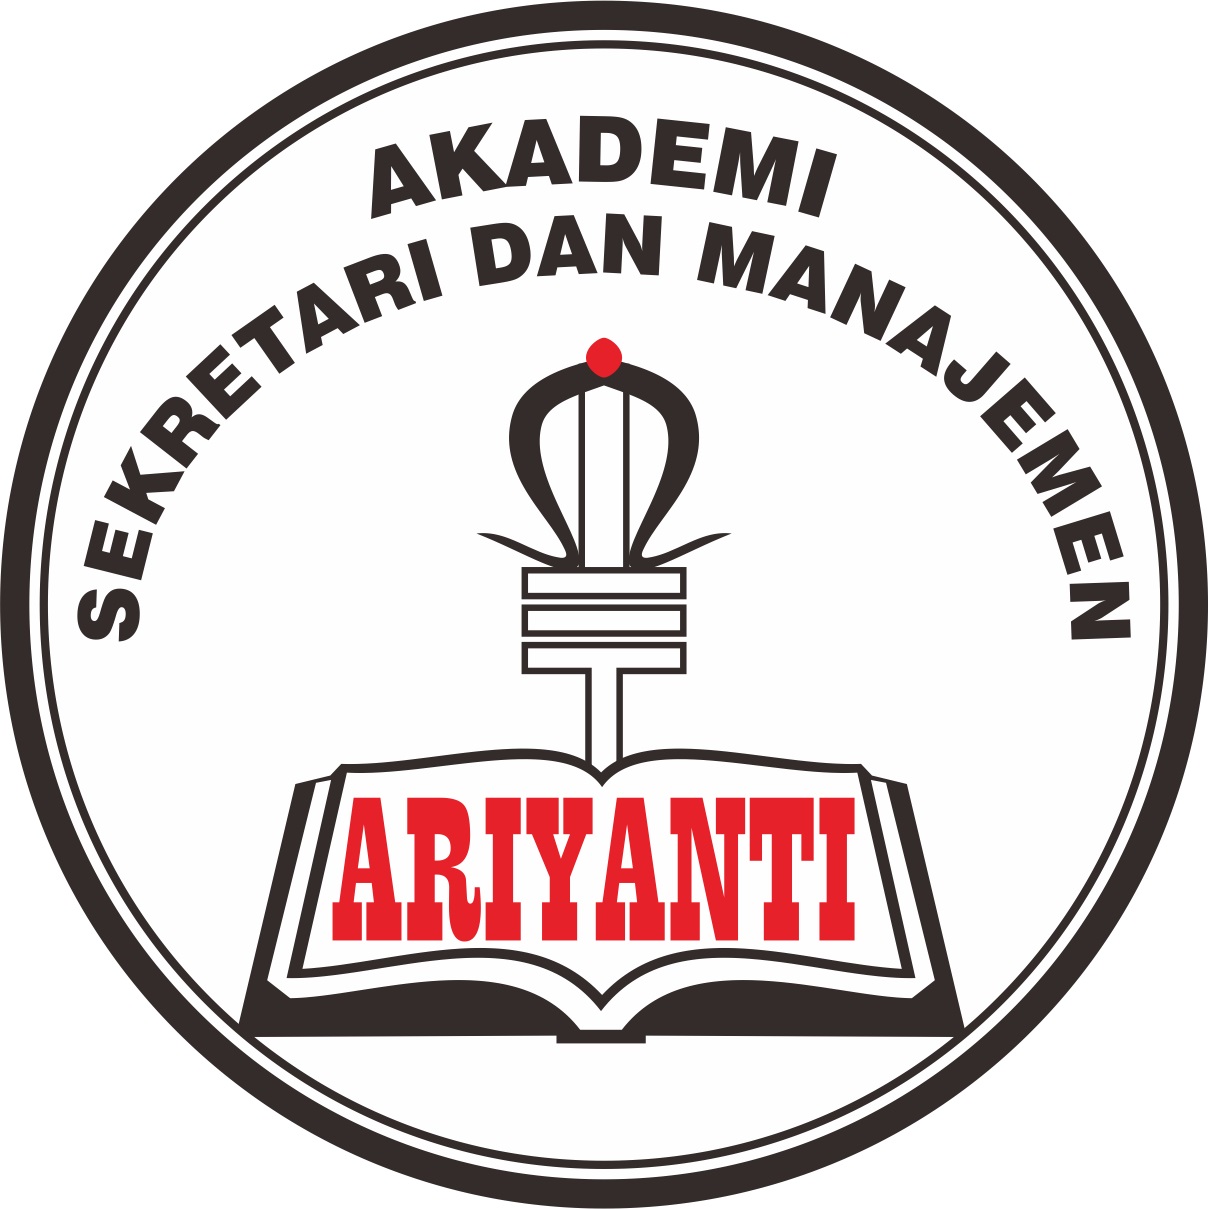 Akademi Sekretari Dan Manajemen Ariyanti